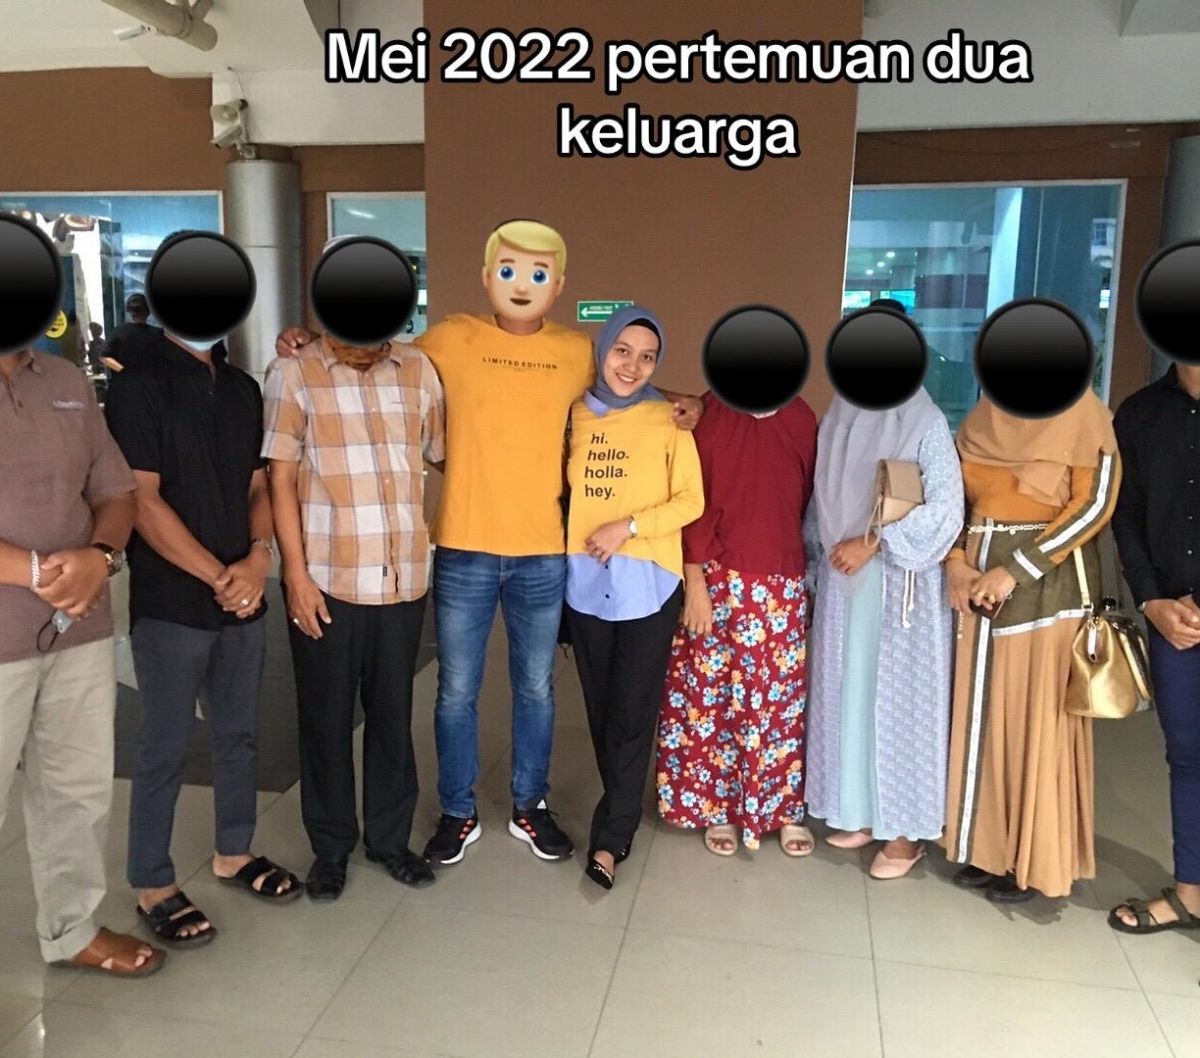 Curhat Wanita Lampung Pacaran 4 Tahun Cuma Jagain Jodoh Orang: Mantan Tiba-Tiba Menikah Padahal Sudah 2 Kali Gelar Pertemuan Keluarga